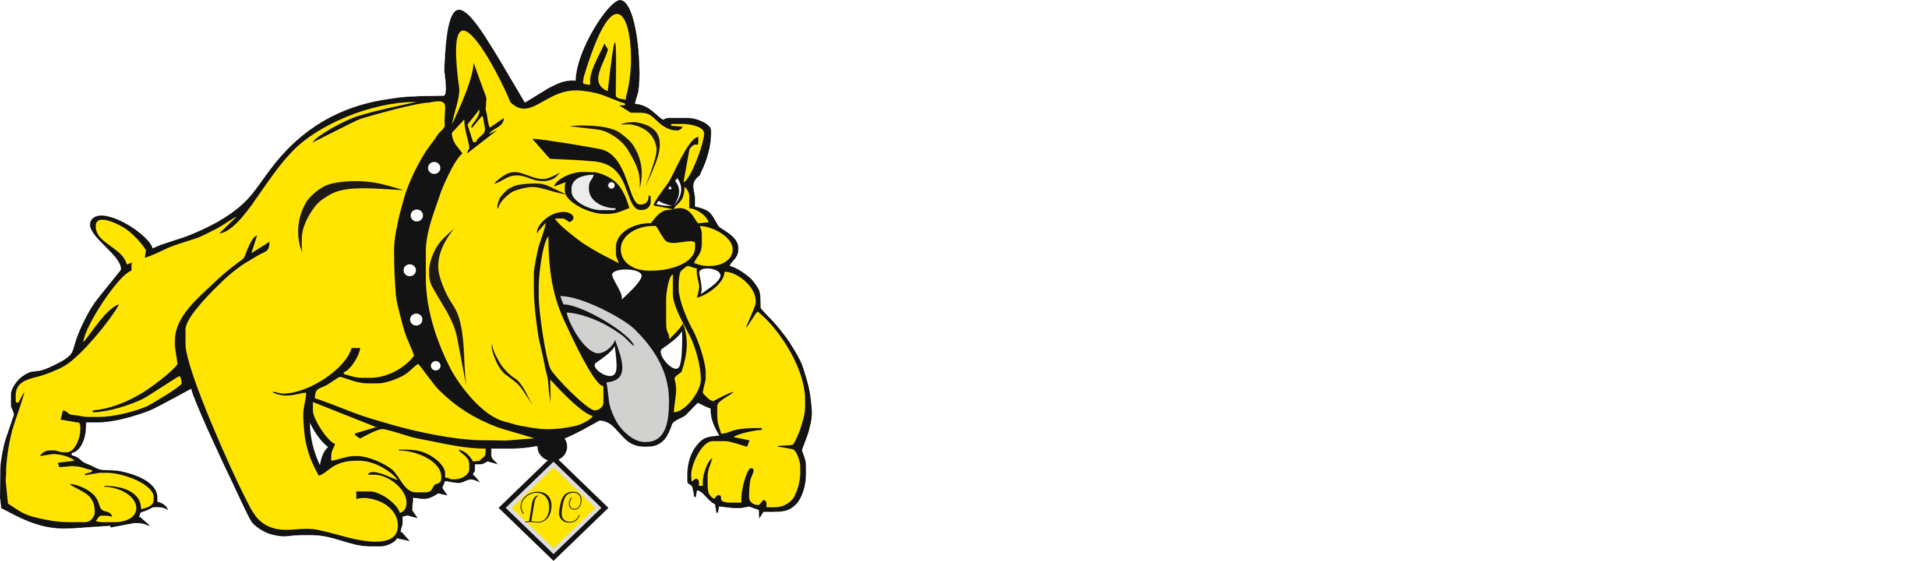 dog com mantisfpv australia battery brand logo